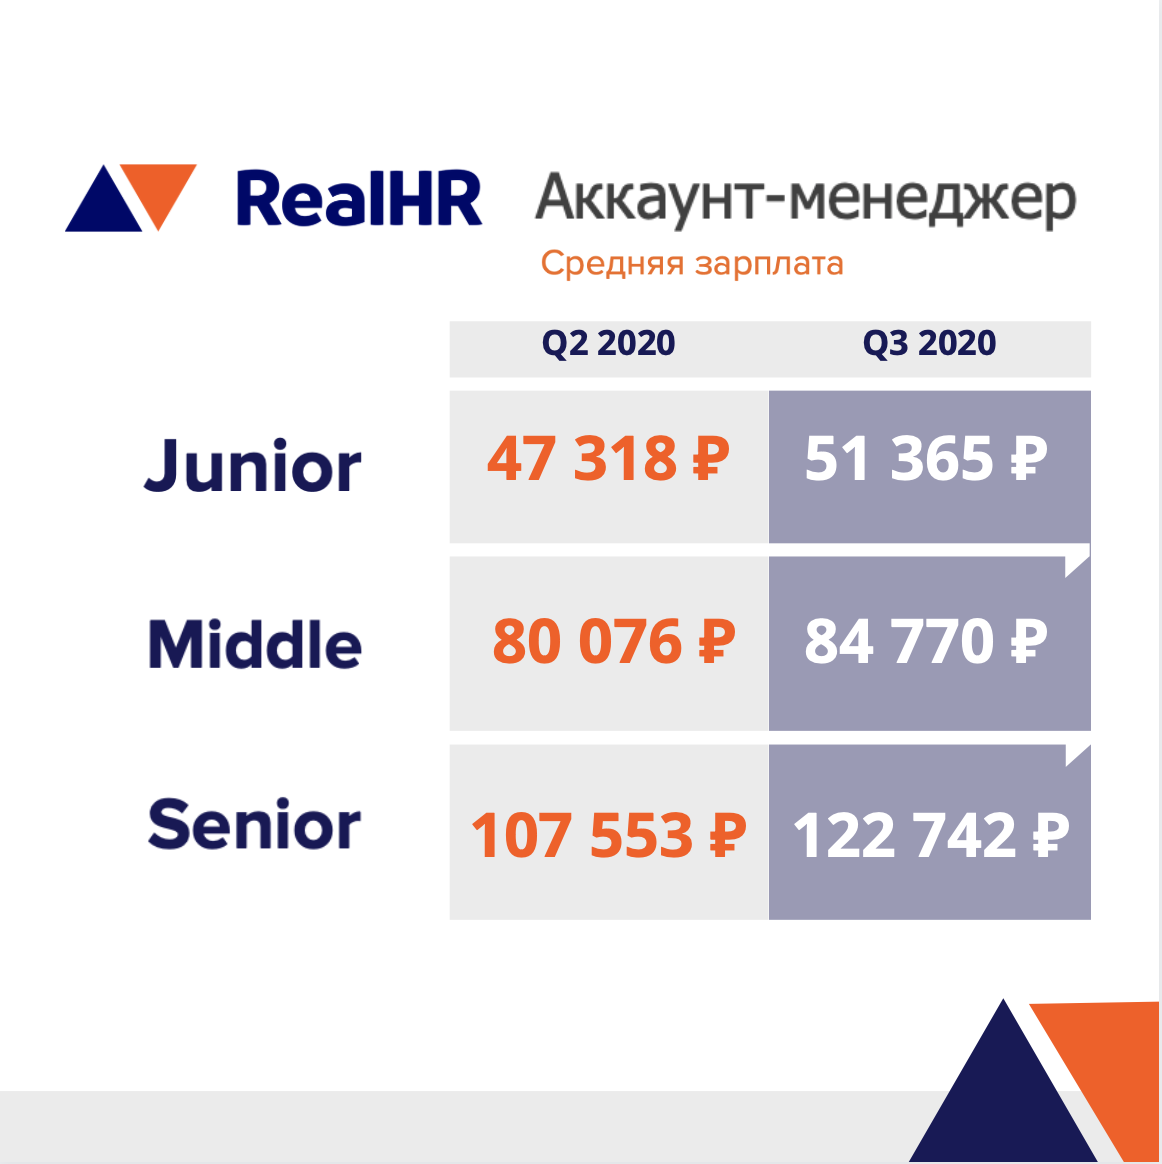 Рейтинг зарплат за Q3 2020 в digital RealHR: аккаунт-менеджеры